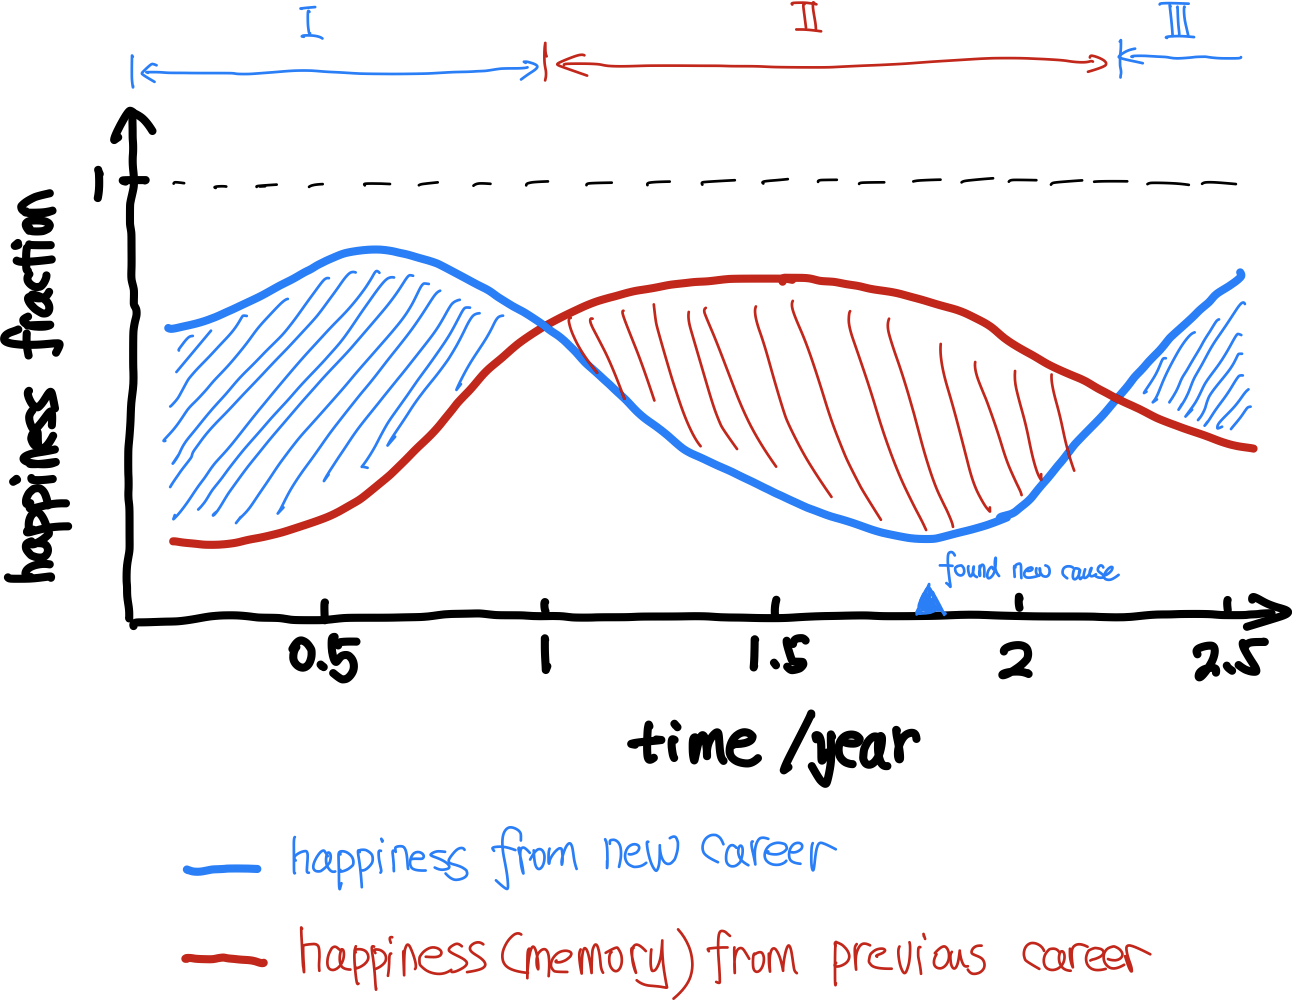 新旧职业交替。Happiness fraction 可以定义为每次想起职业发展，快乐的次数占总次数的比例，当然旧职业只能是存在于回忆中了。工作带来的快乐，差不多就是上面蓝色曲线和红色曲线的差值了。